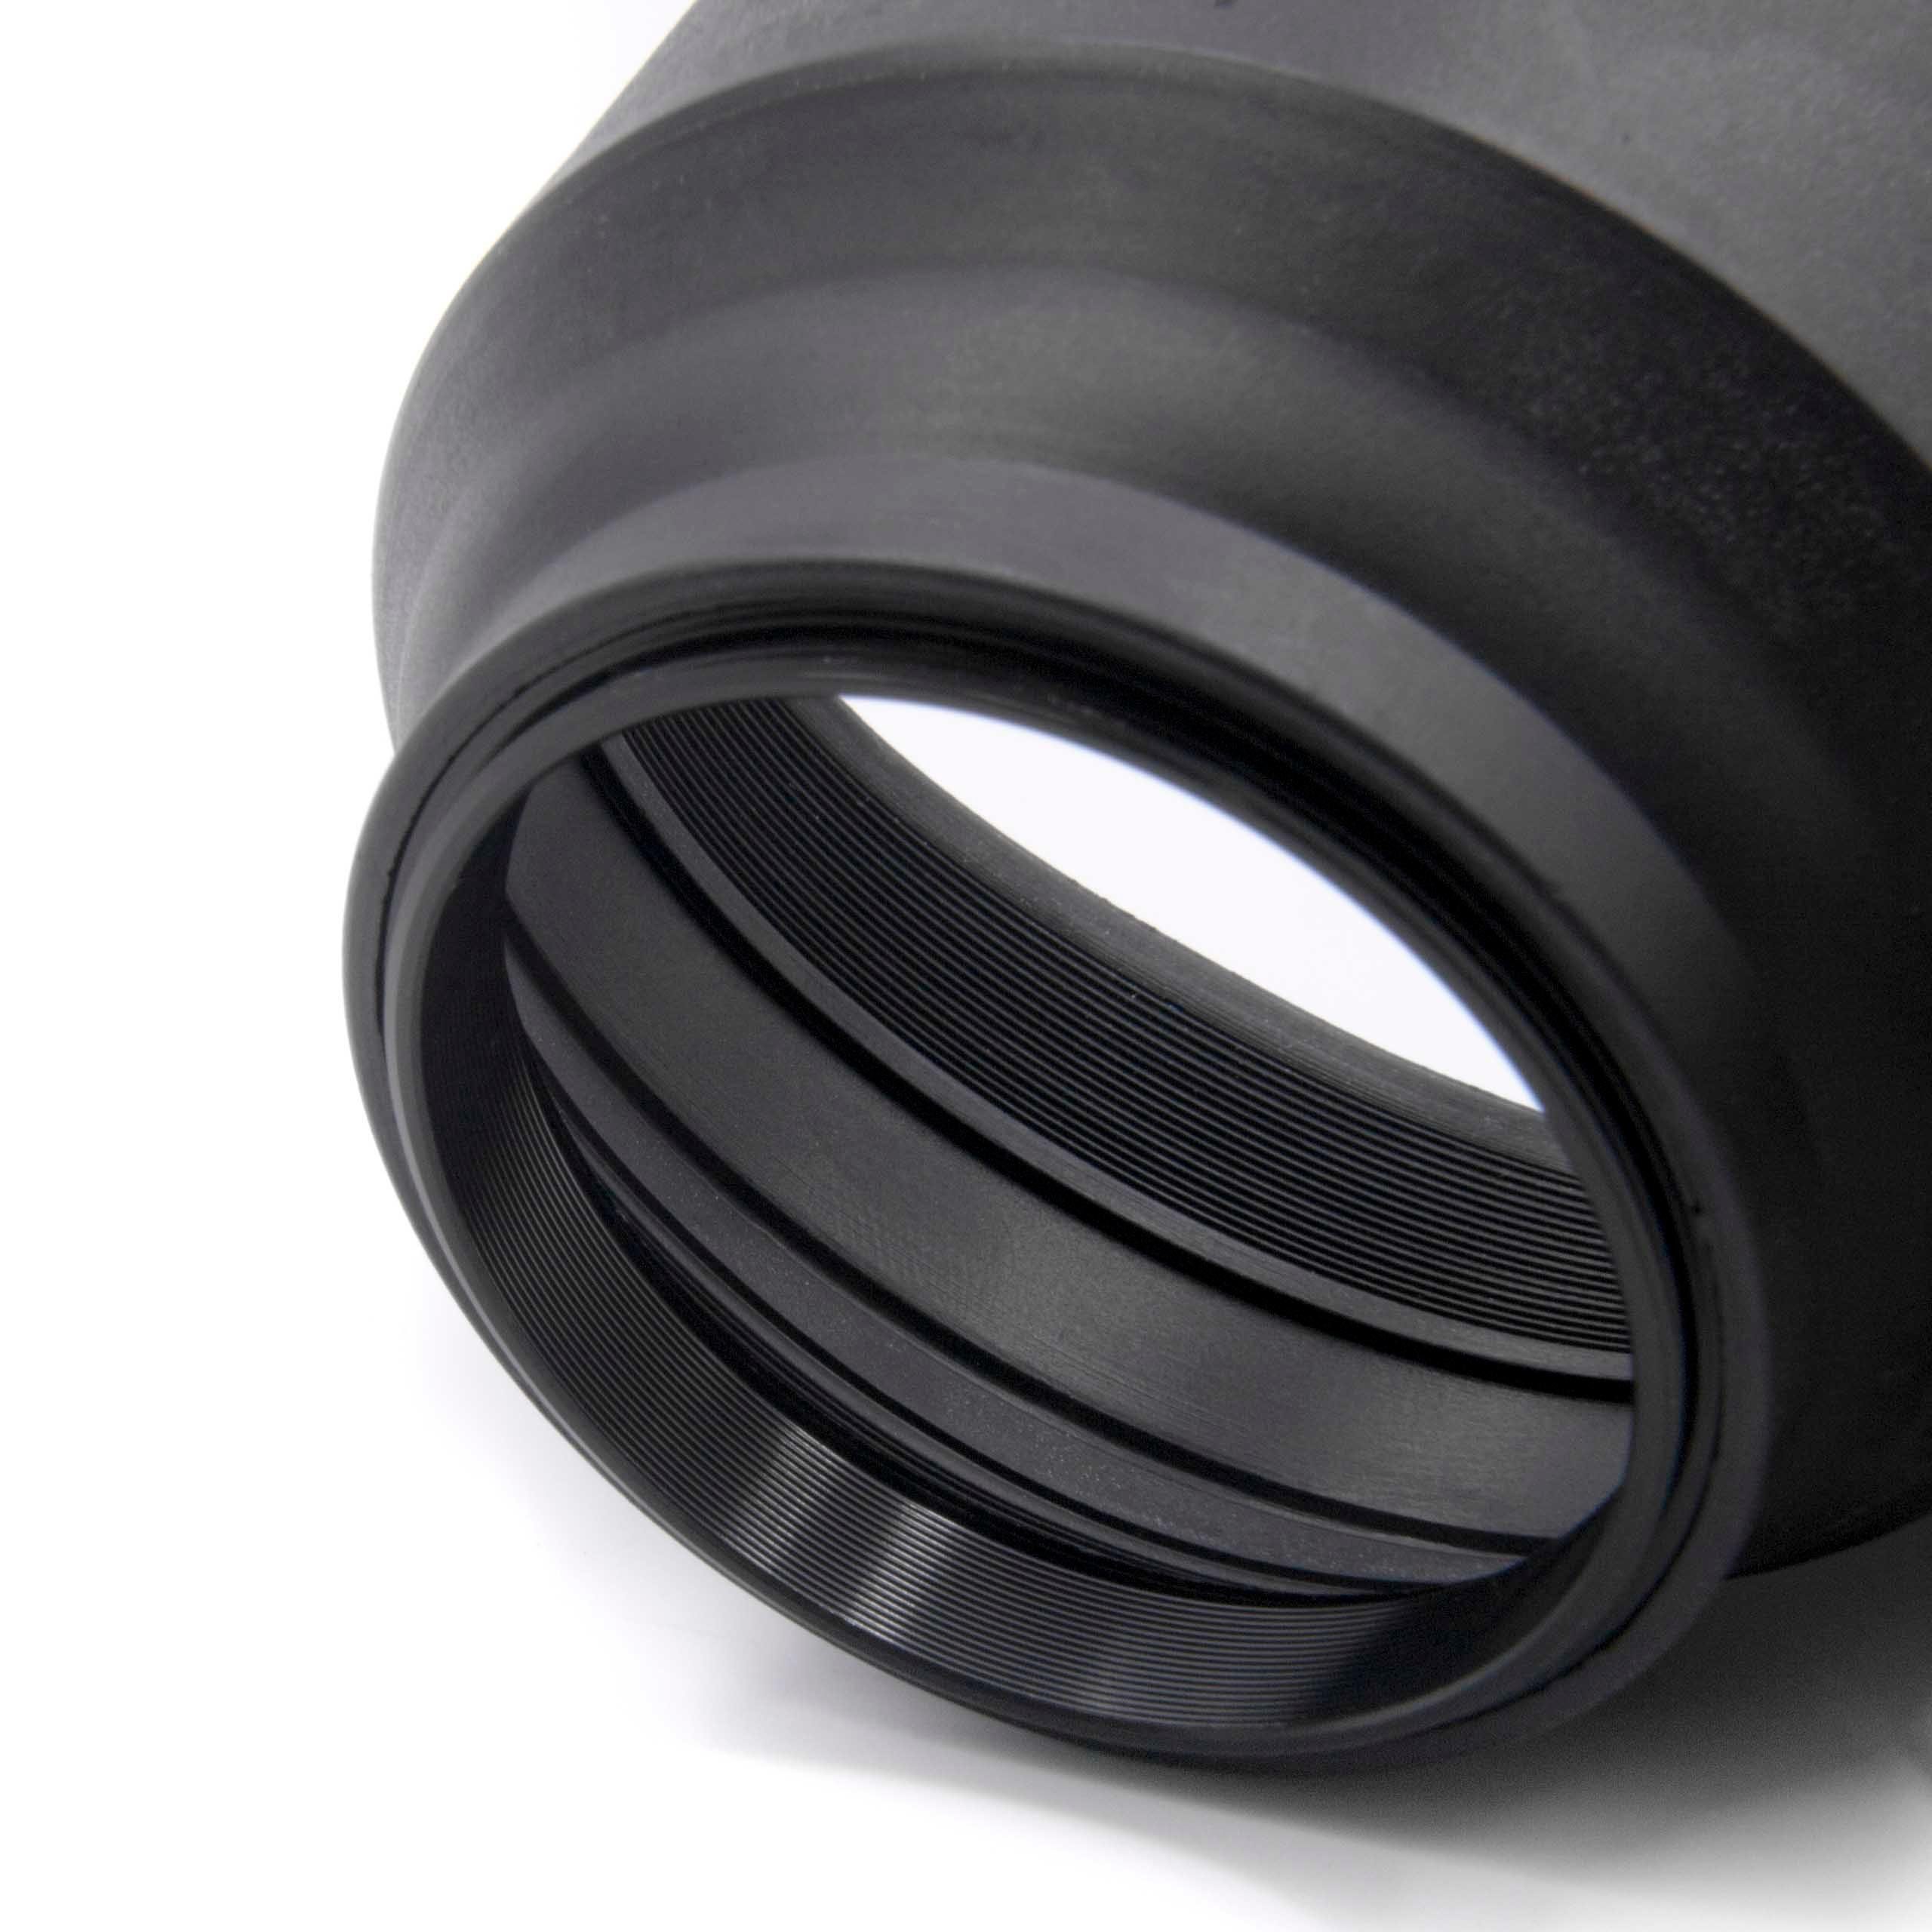 vhbw 9-18 für passend Lens 4.0-5.6 mm Gegenlichtblende mm Cap 15 ED Body Olympus (EZ-M918),